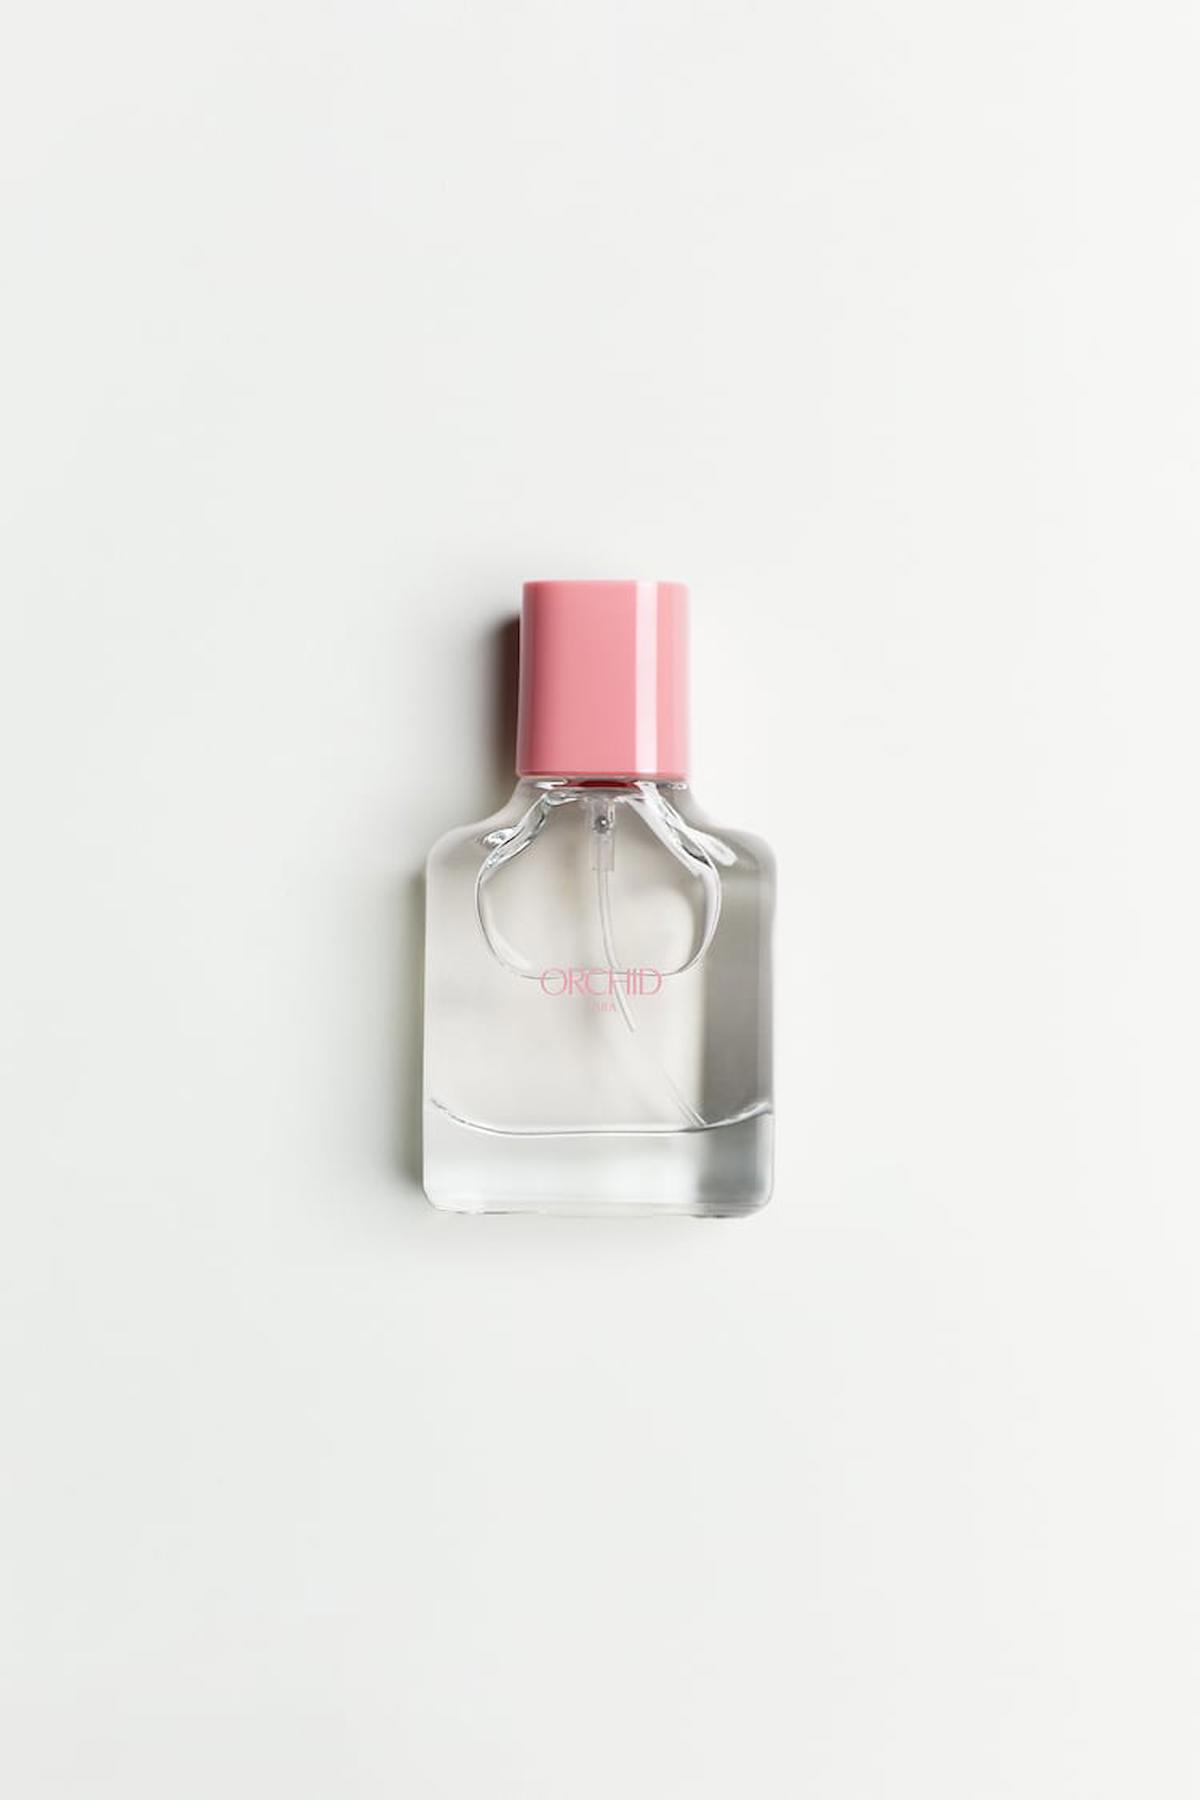 Zara Orchid EDP Çiçeksi Kadın Parfüm 30 ml